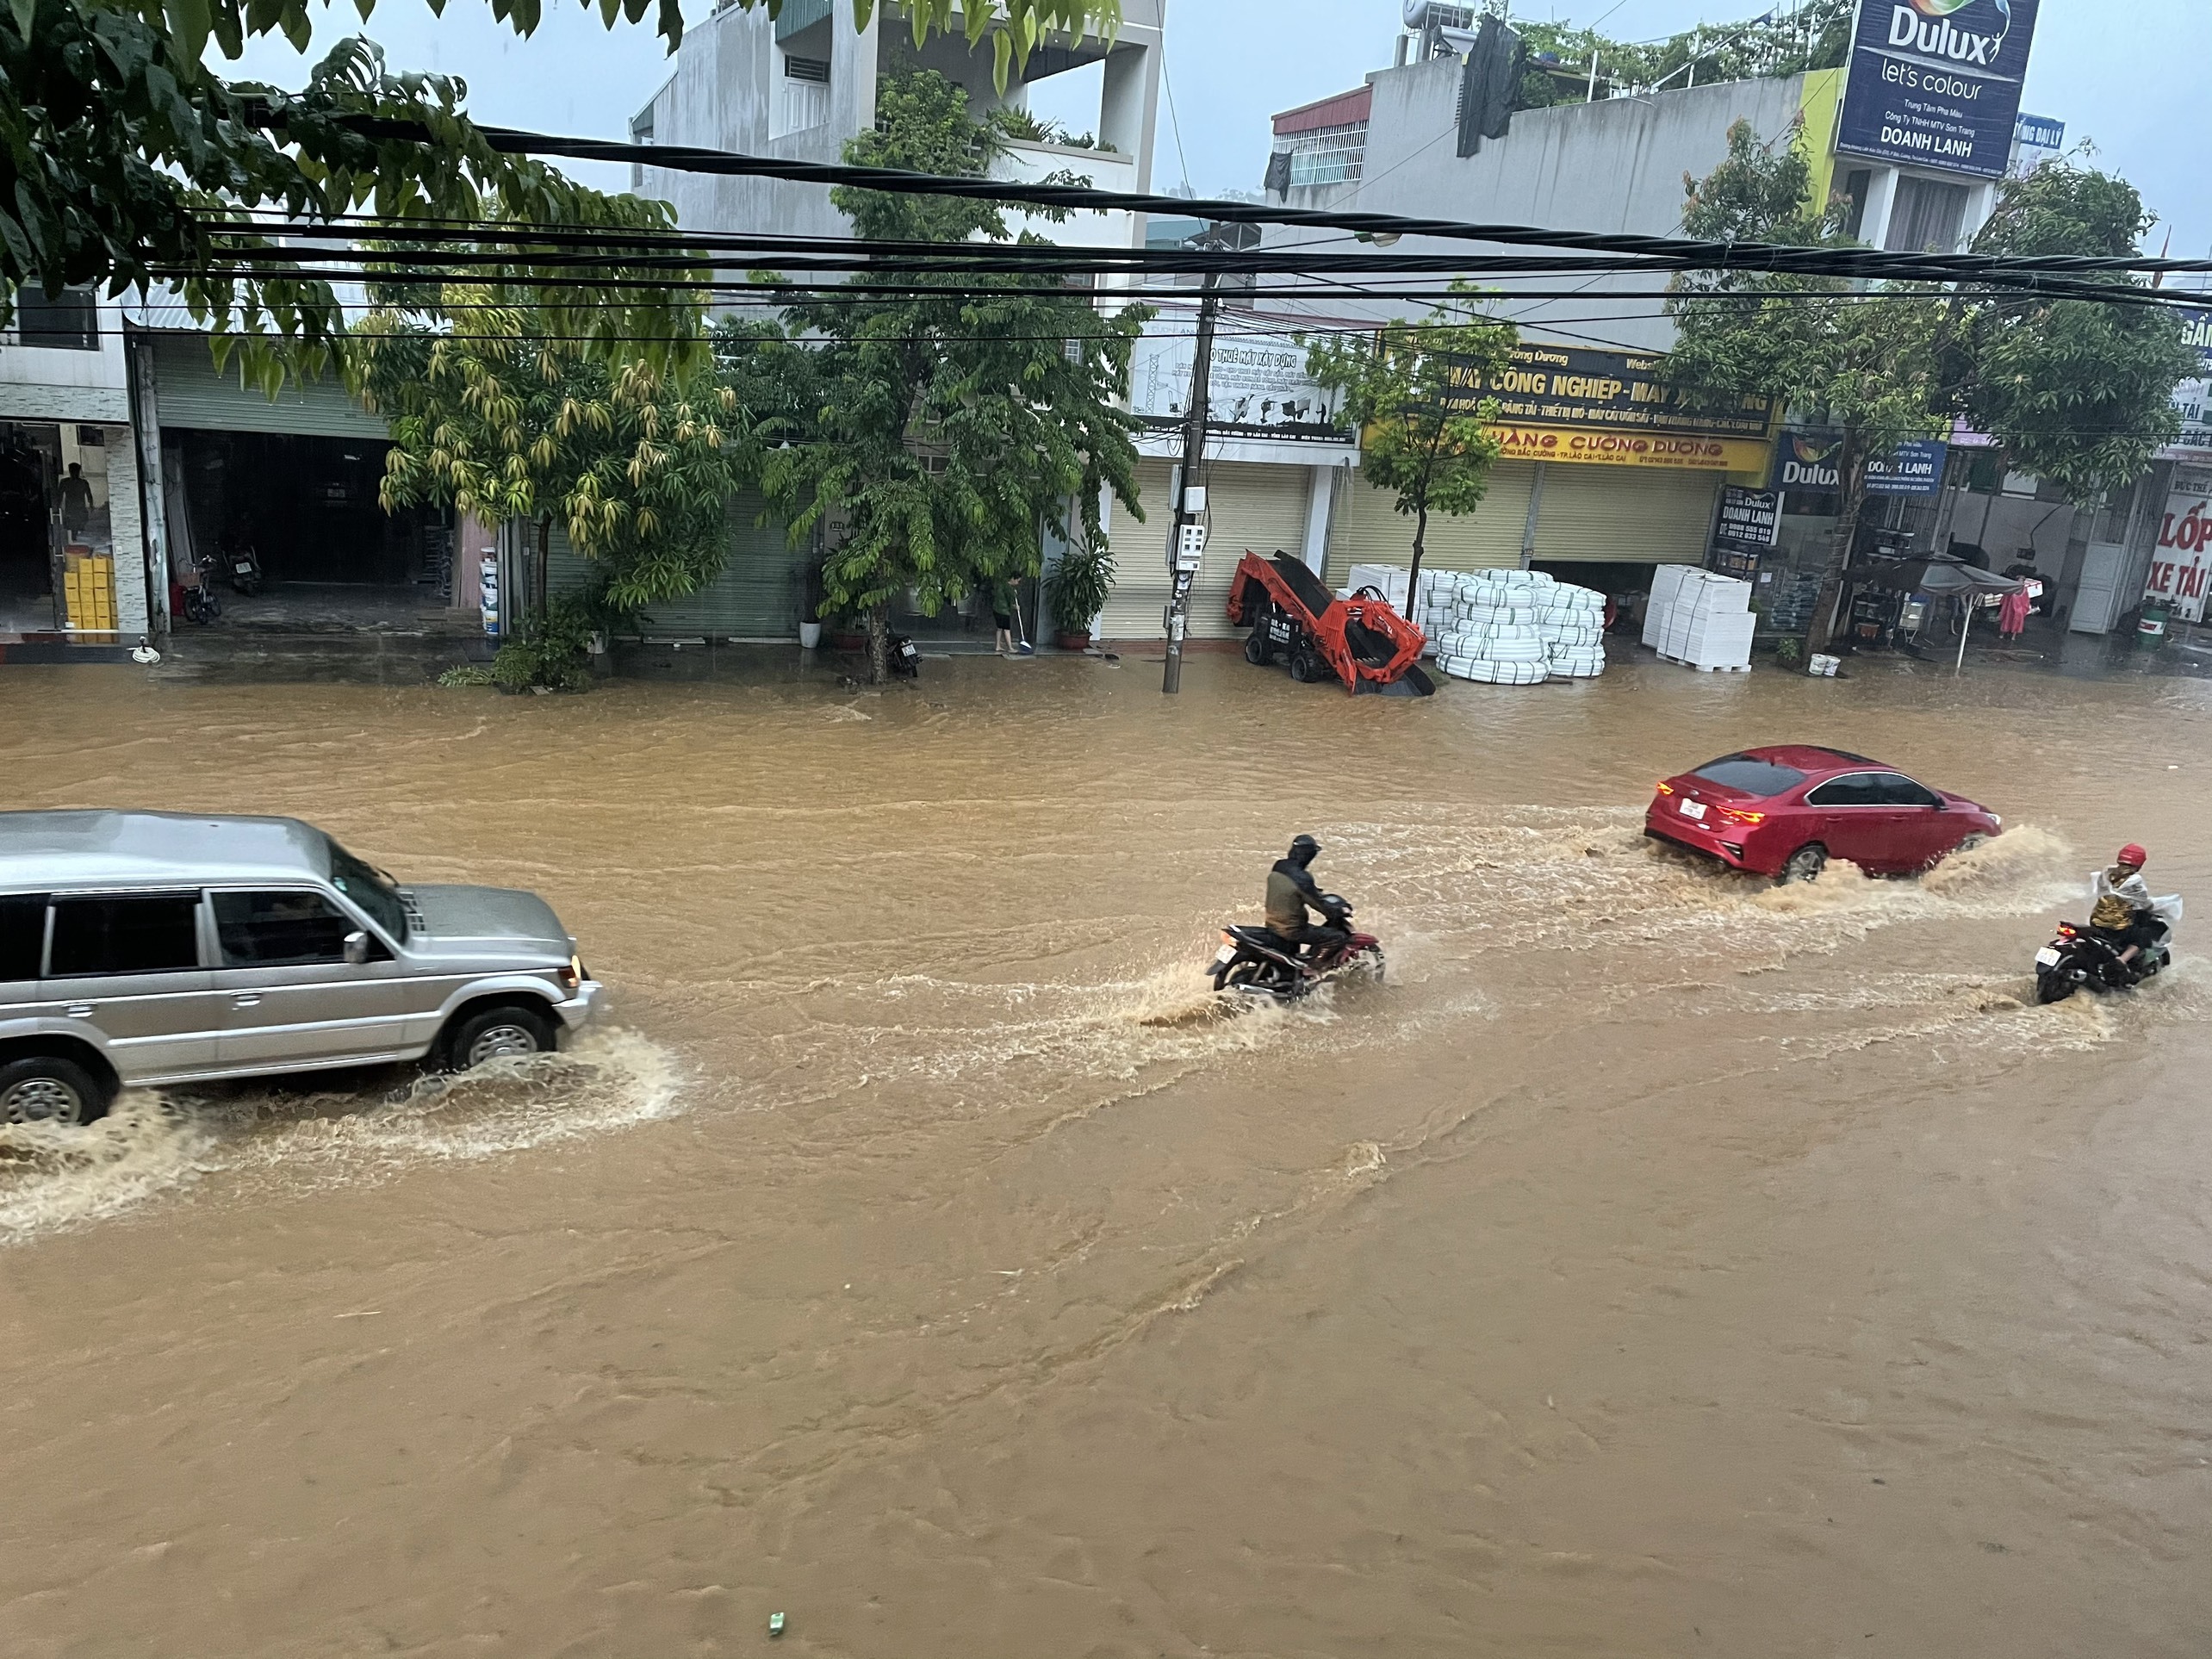 Thành phố Lào Cai chìm trong biển nước sau trận mưa lớn